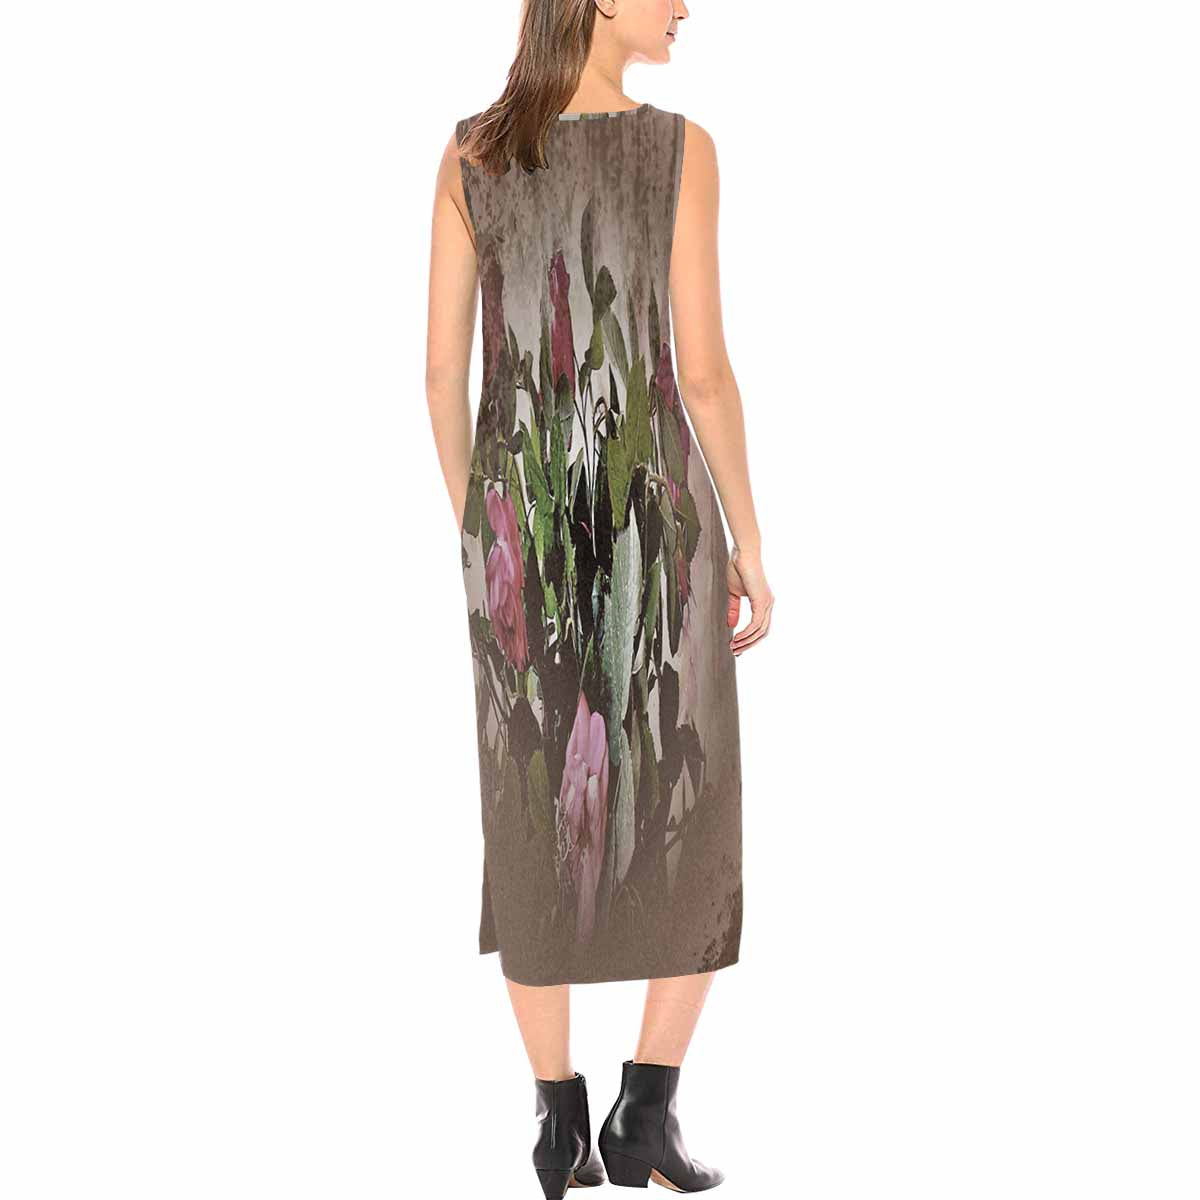 Vintage floral long dress, model D09538 Design 22x